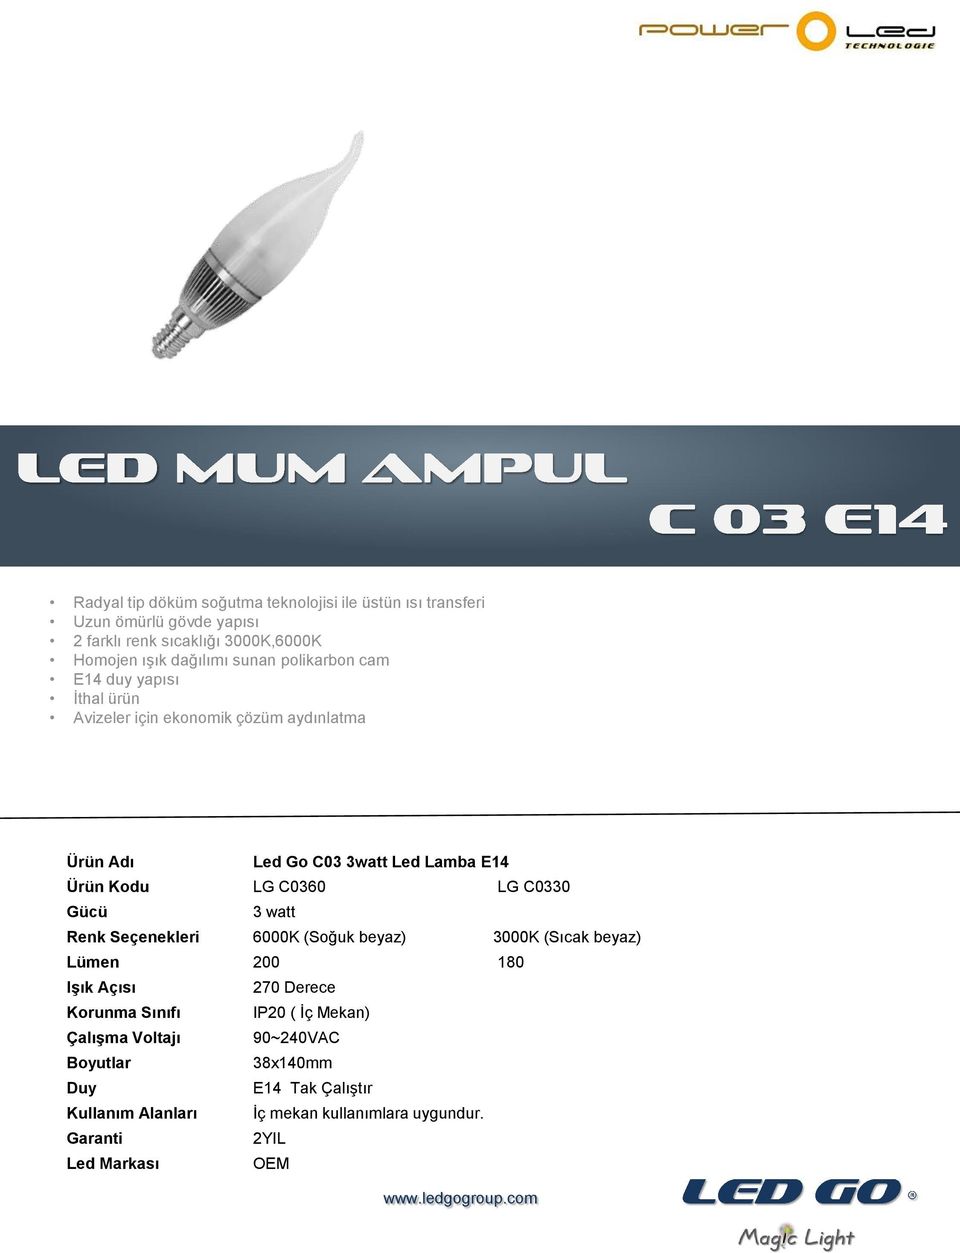 LG C0360 LG C0330 3 watt Renk Seçenekleri 6000K (Soğuk beyaz) 3000K (Sıcak beyaz) Lümen 200 180 Işık Açısı 270 Derece Korunma Sınıfı IP20